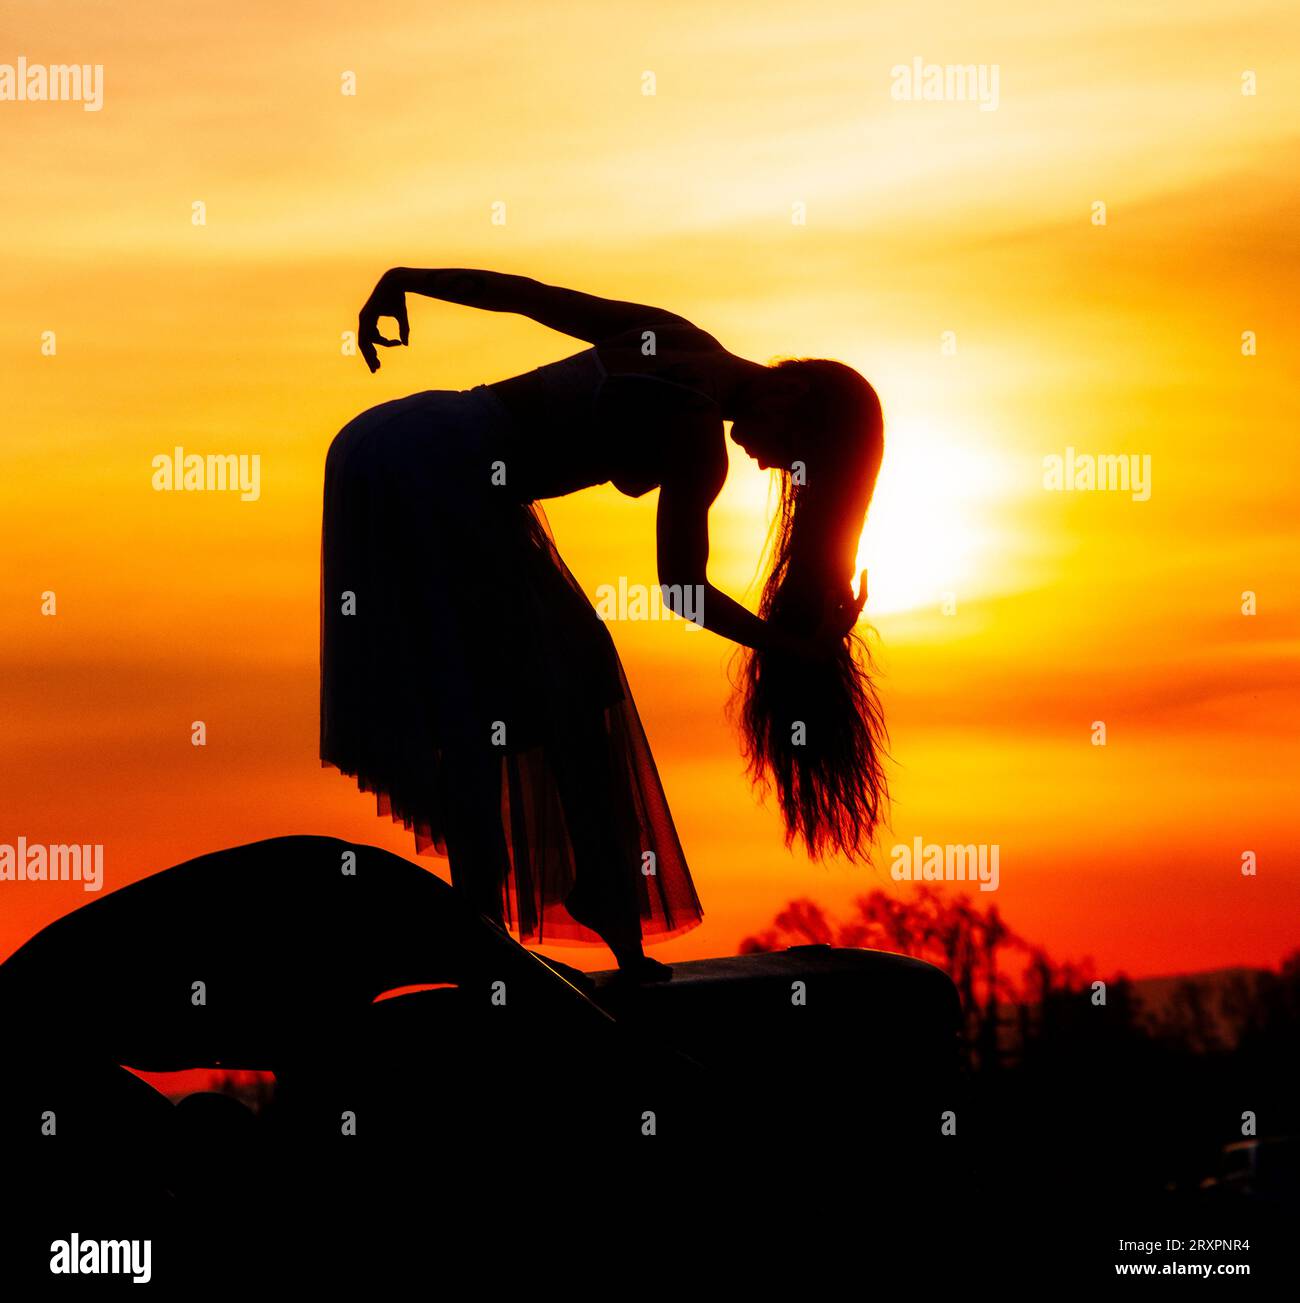 Silhouette de femme aux cheveux longs posant contre le soleil couchant Banque D'Images